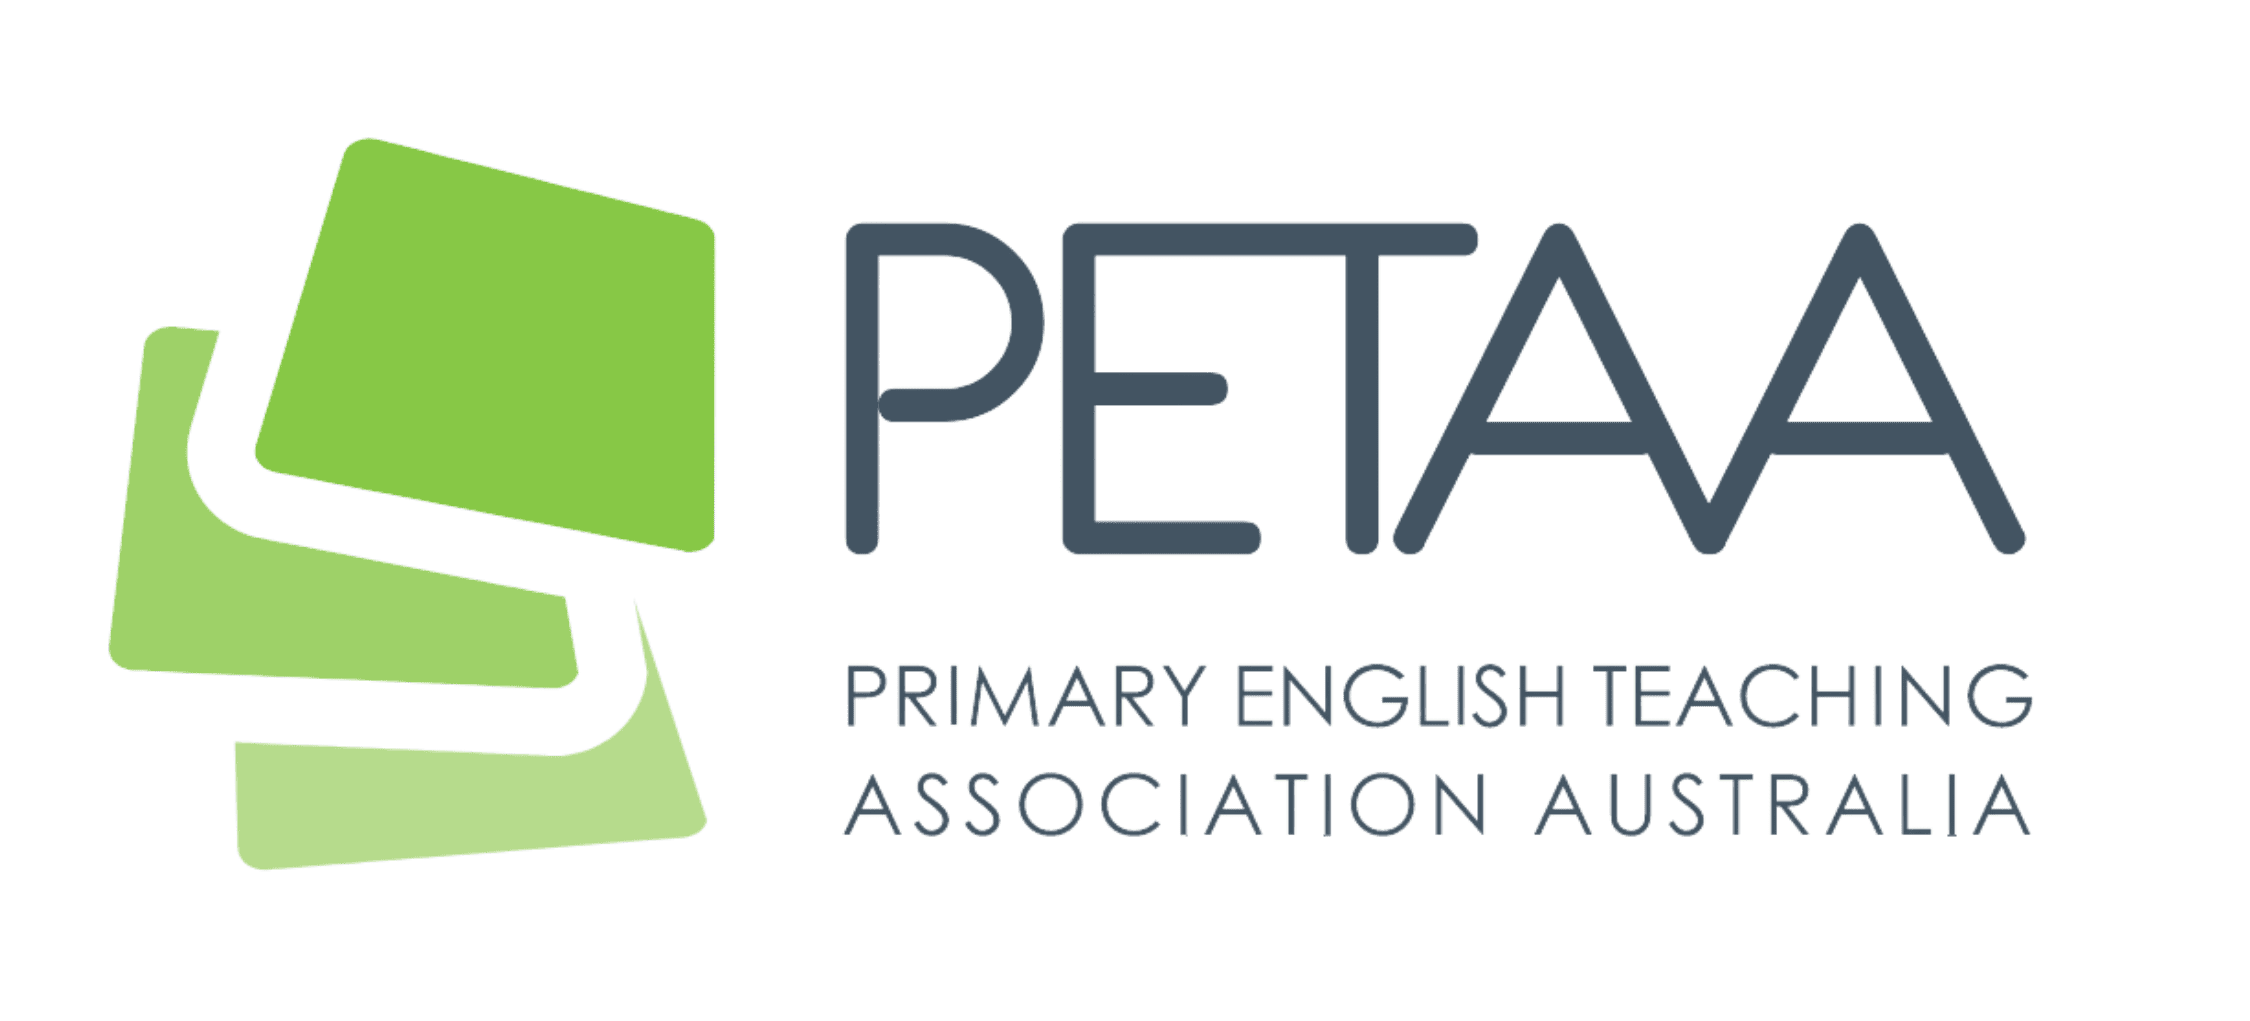 PETAA-logo